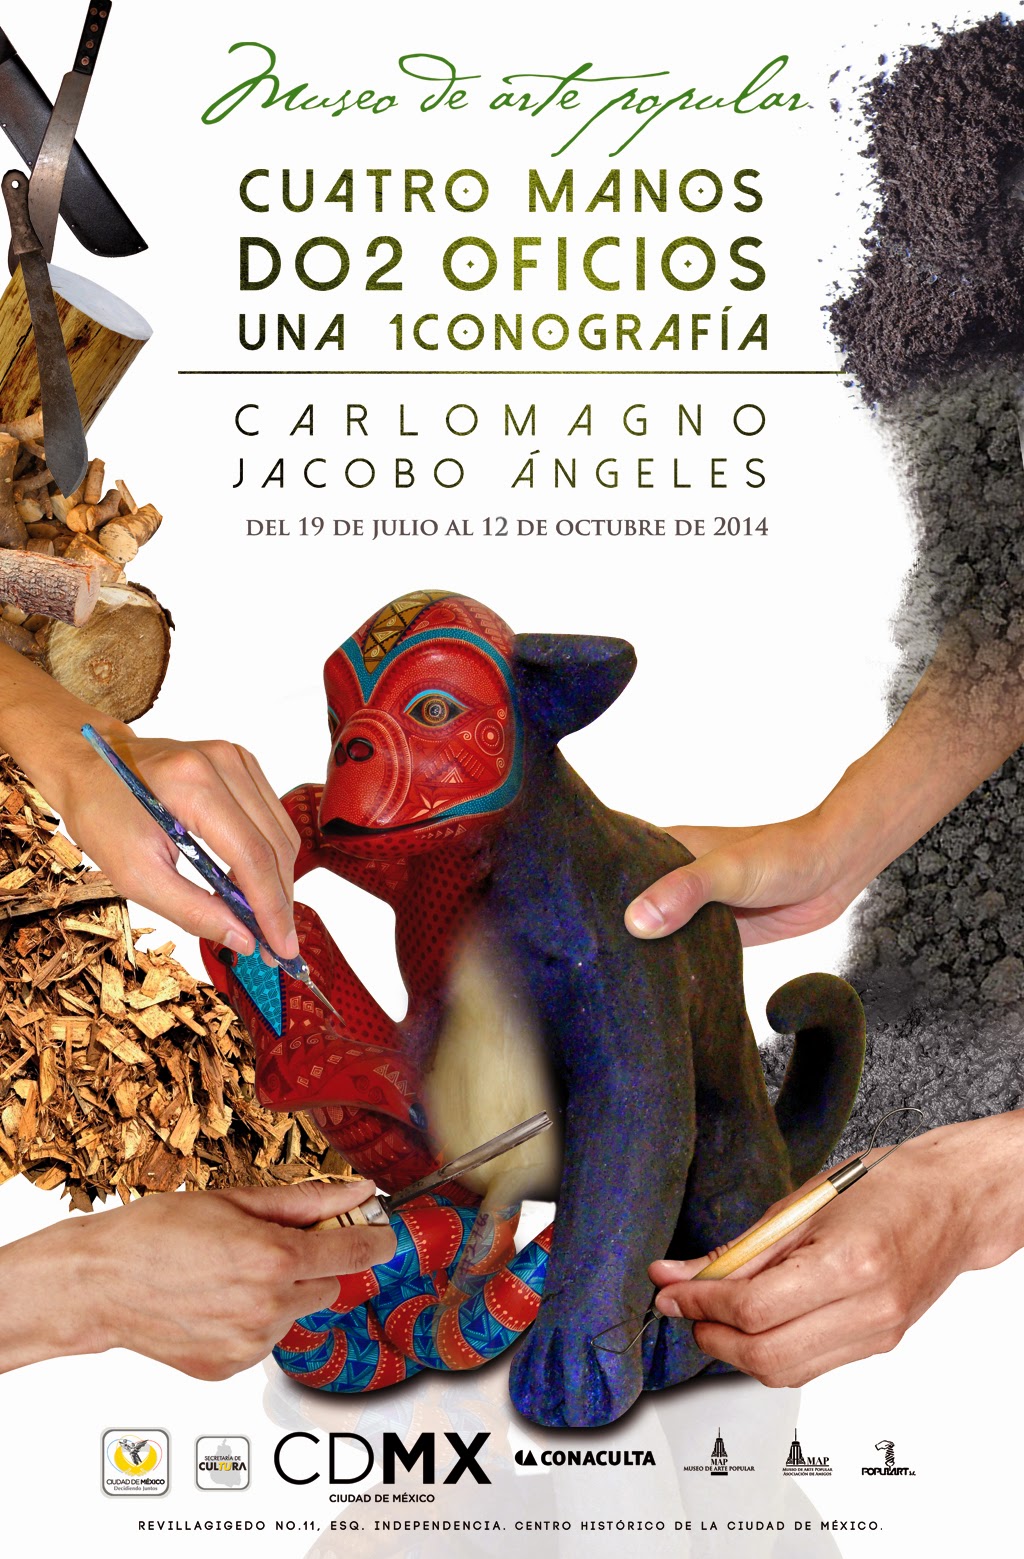 Artesanos oaxaqueños presentan su obra en el Museo de Arte Popular